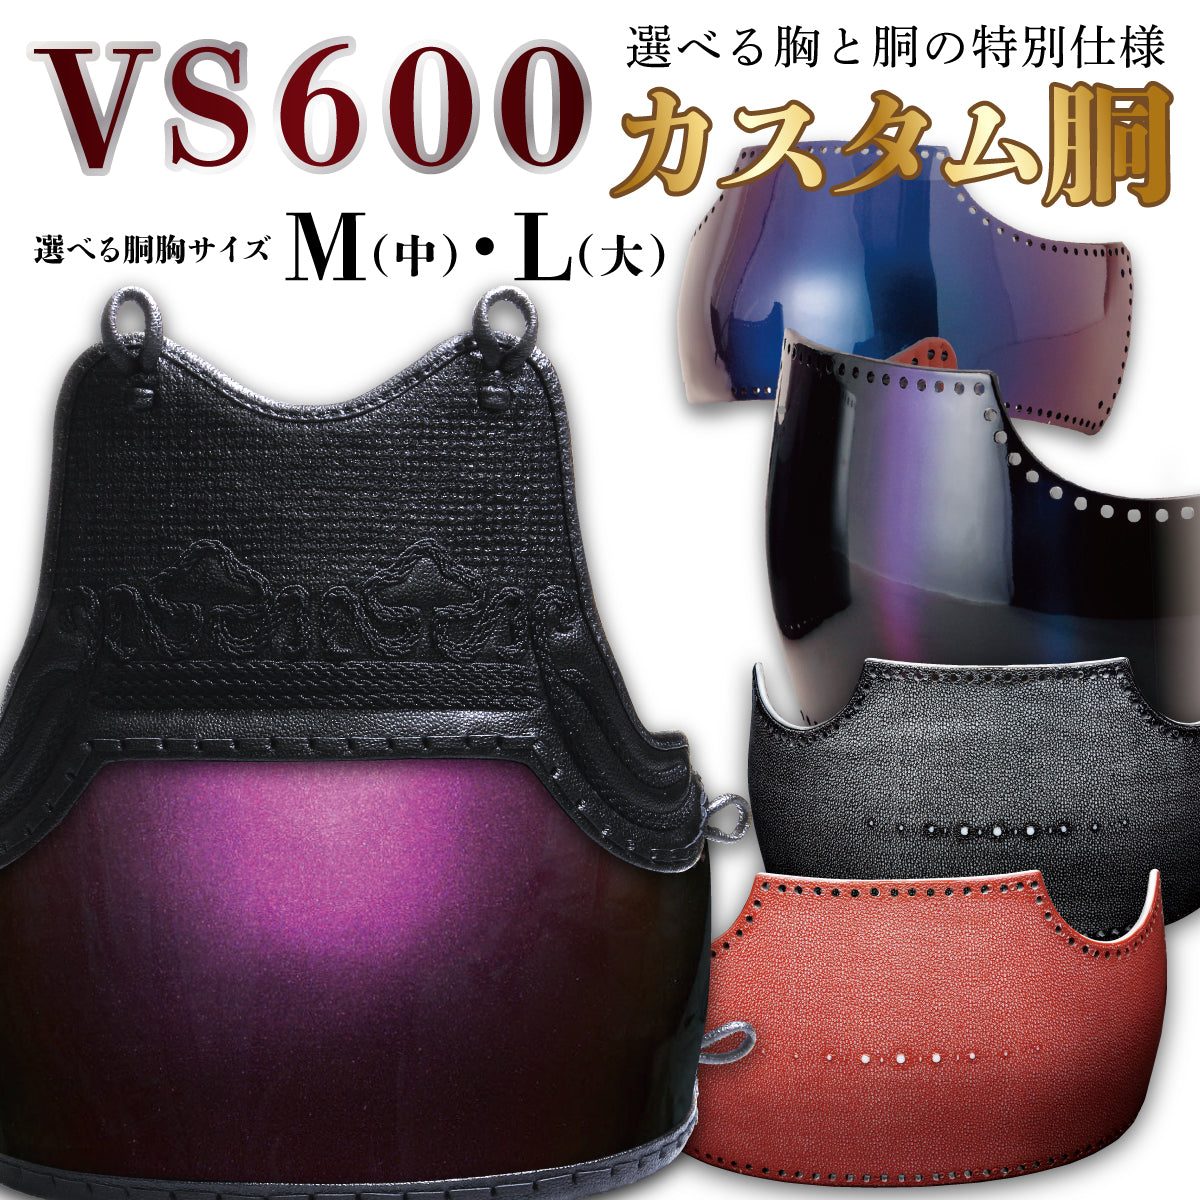 【 オーダー 】VS600 カスタム胴 胴胸サイズM/L